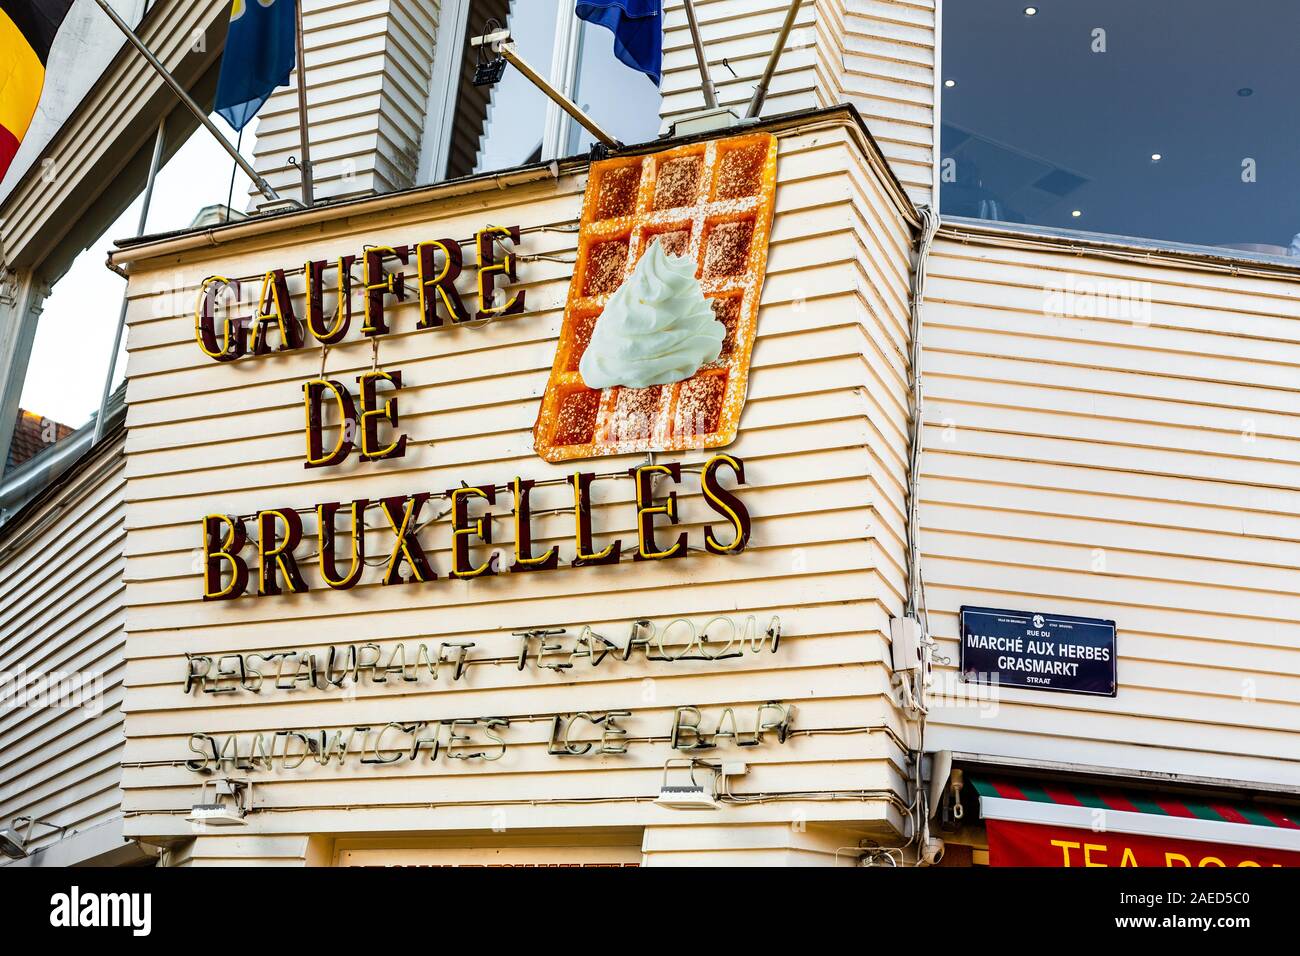 Gaufre de Bruxelles, Brussels, Belgium Stock Photo